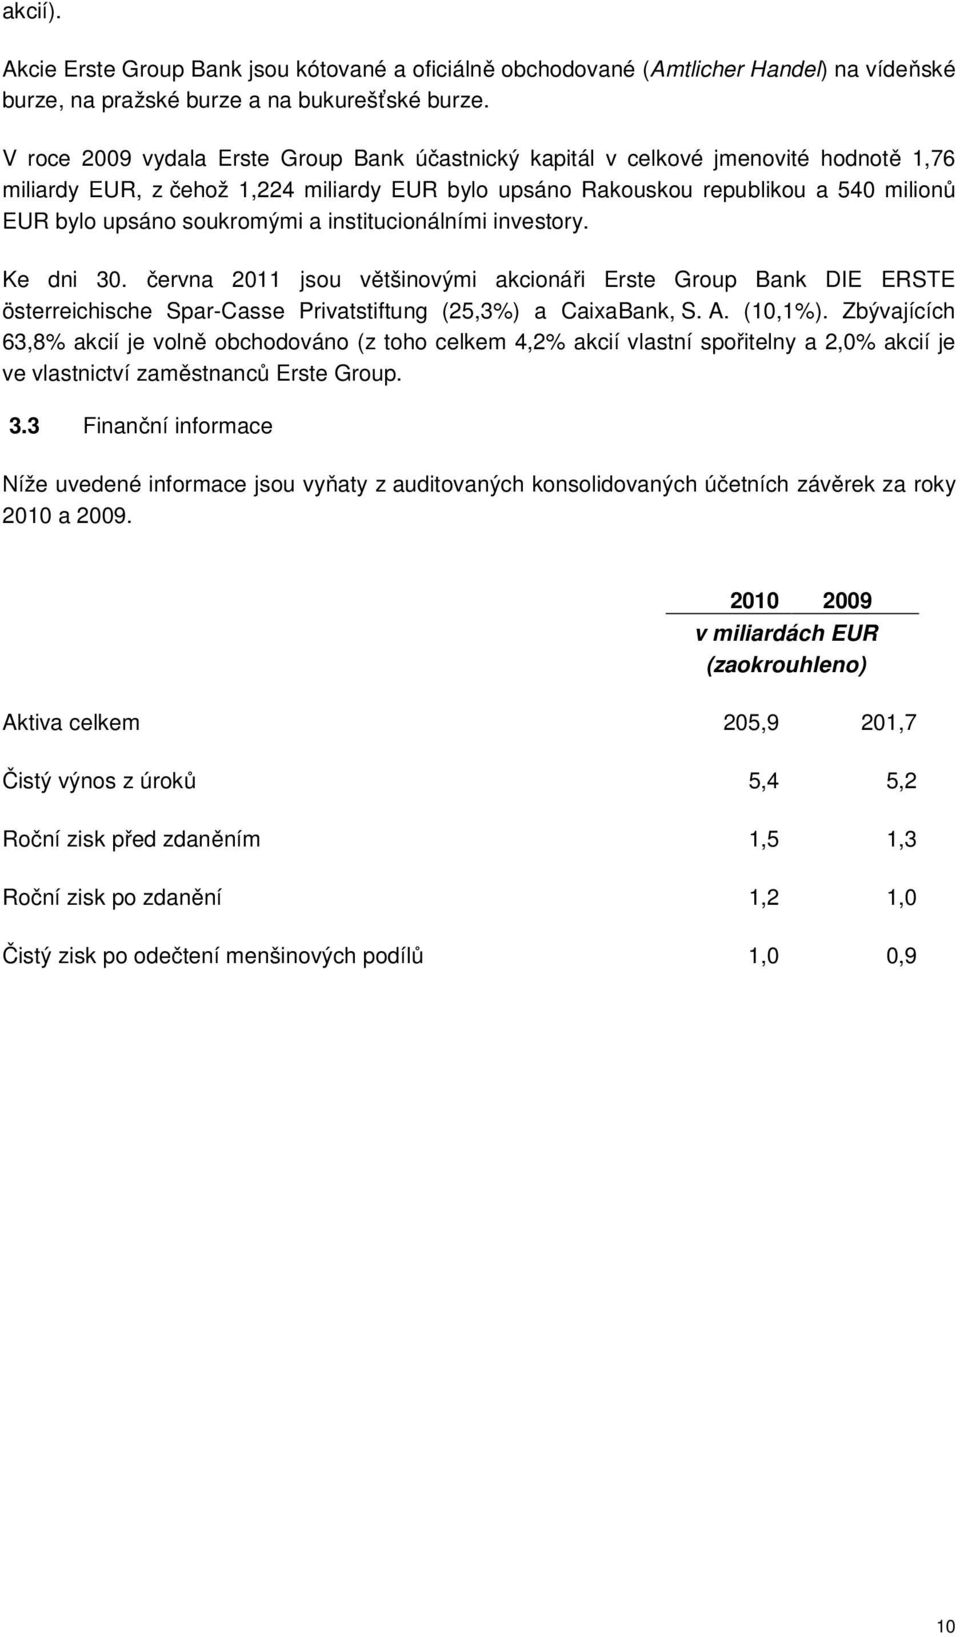 soukromými a institucionálními investory. Ke dni 30. června 2011 jsou většinovými akcionáři Erste Group Bank DIE ERSTE österreichische Spar-Casse Privatstiftung (25,3%) a CaixaBank, S. A. (10,1%).